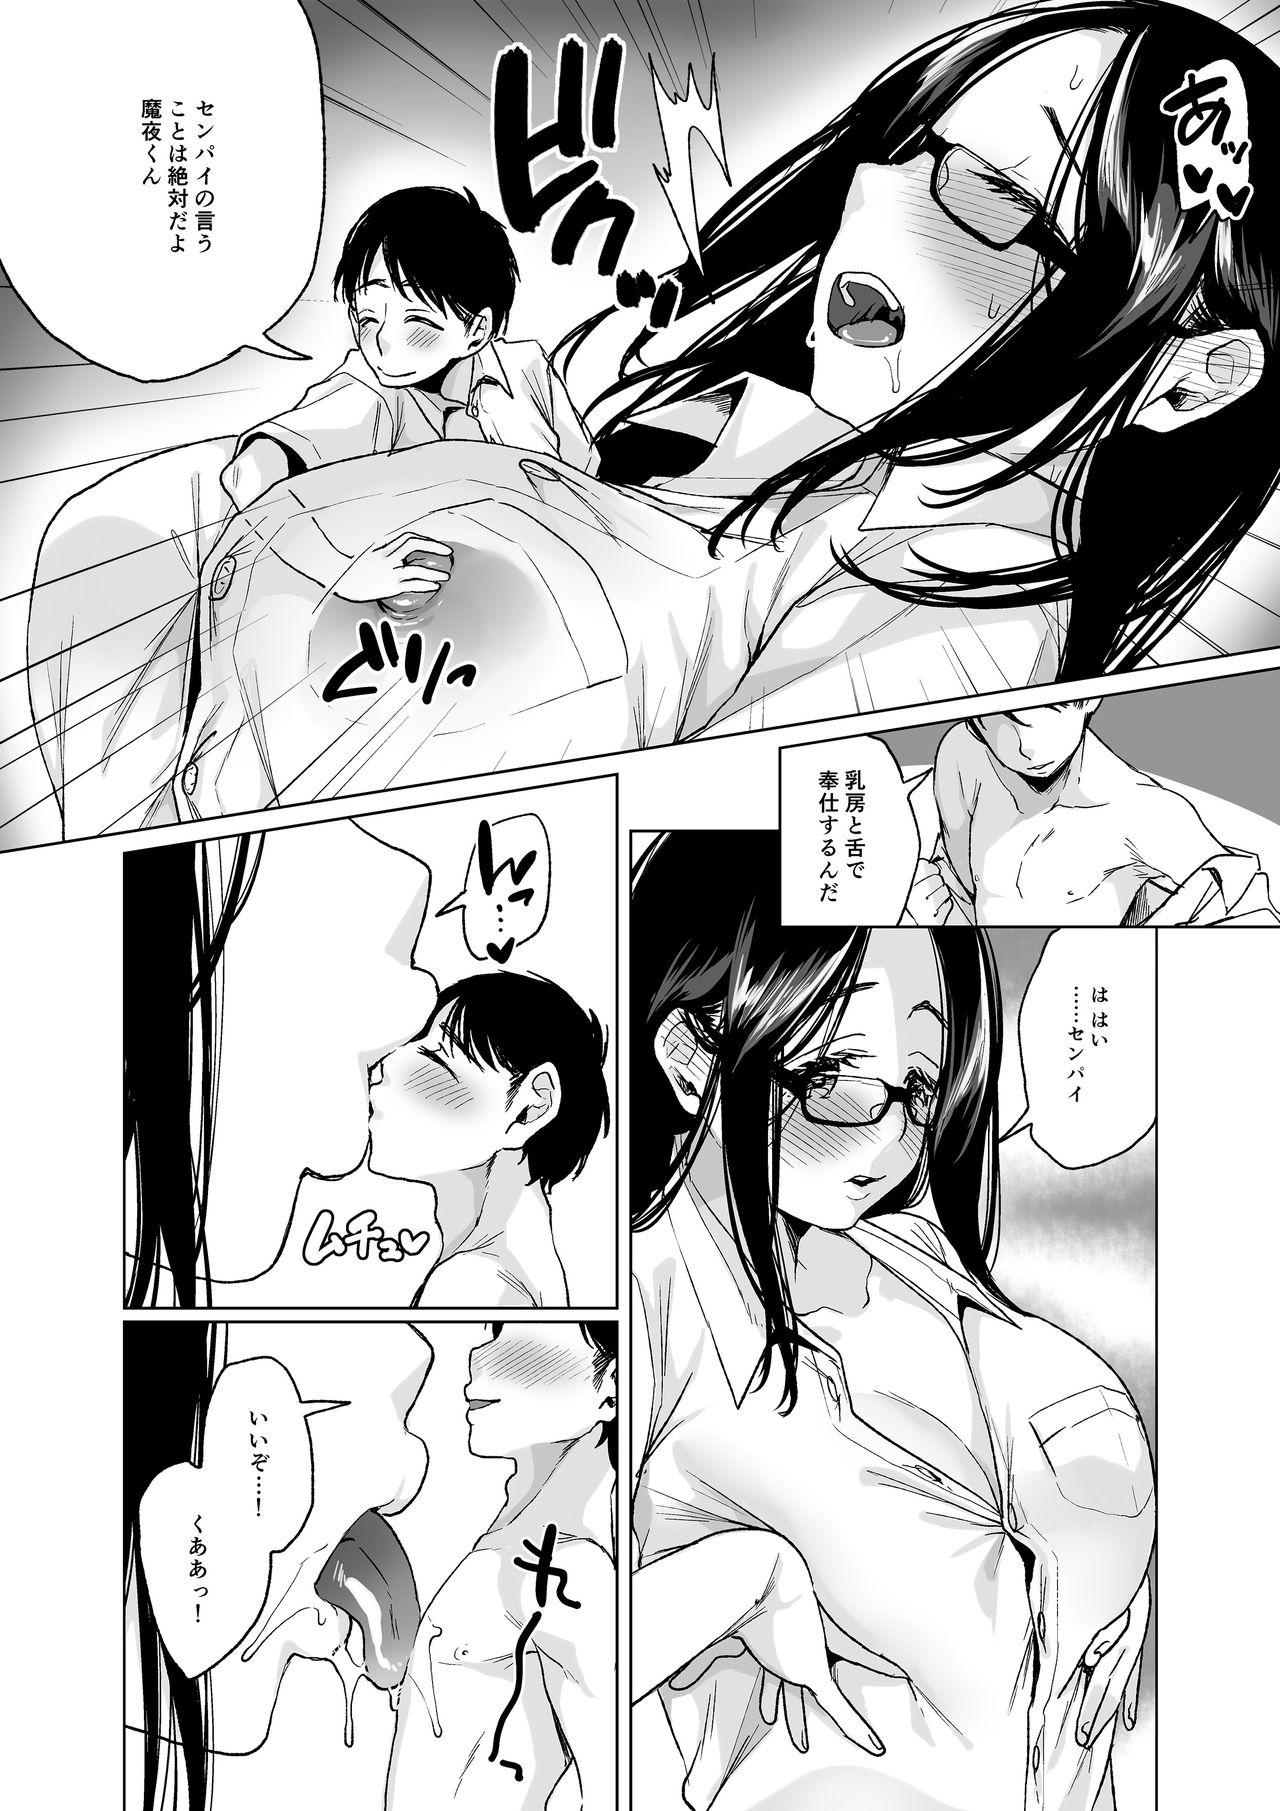 Cam Porn MM Vol. 50 Shumatsu wa Oppai ni Yosete♥ Flaquita - Page 7